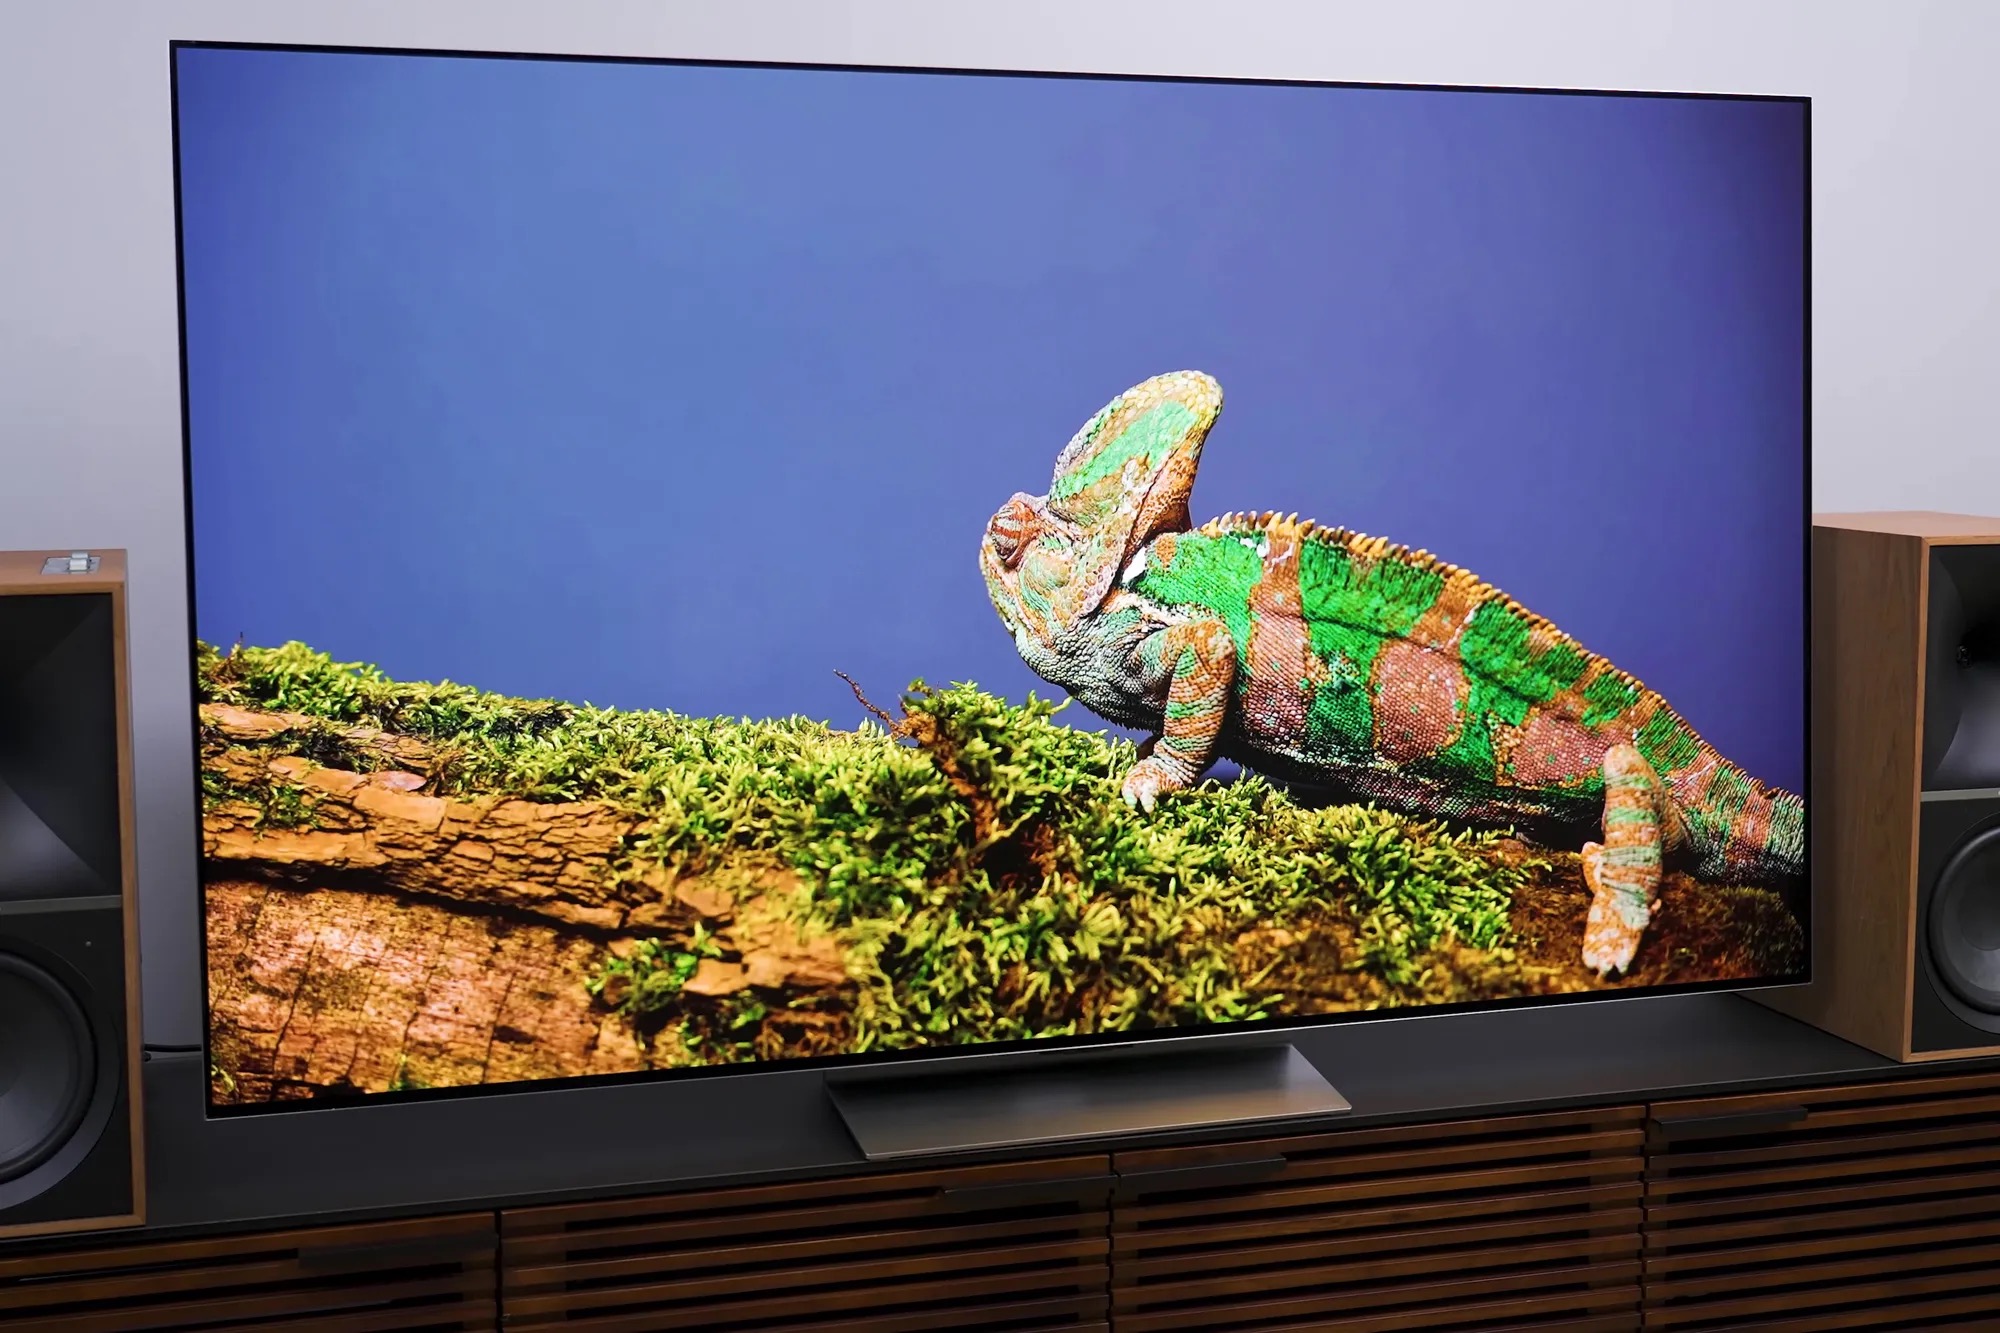 Esta Smart TV de Samsung con 4K está de oferta hoy por menos de